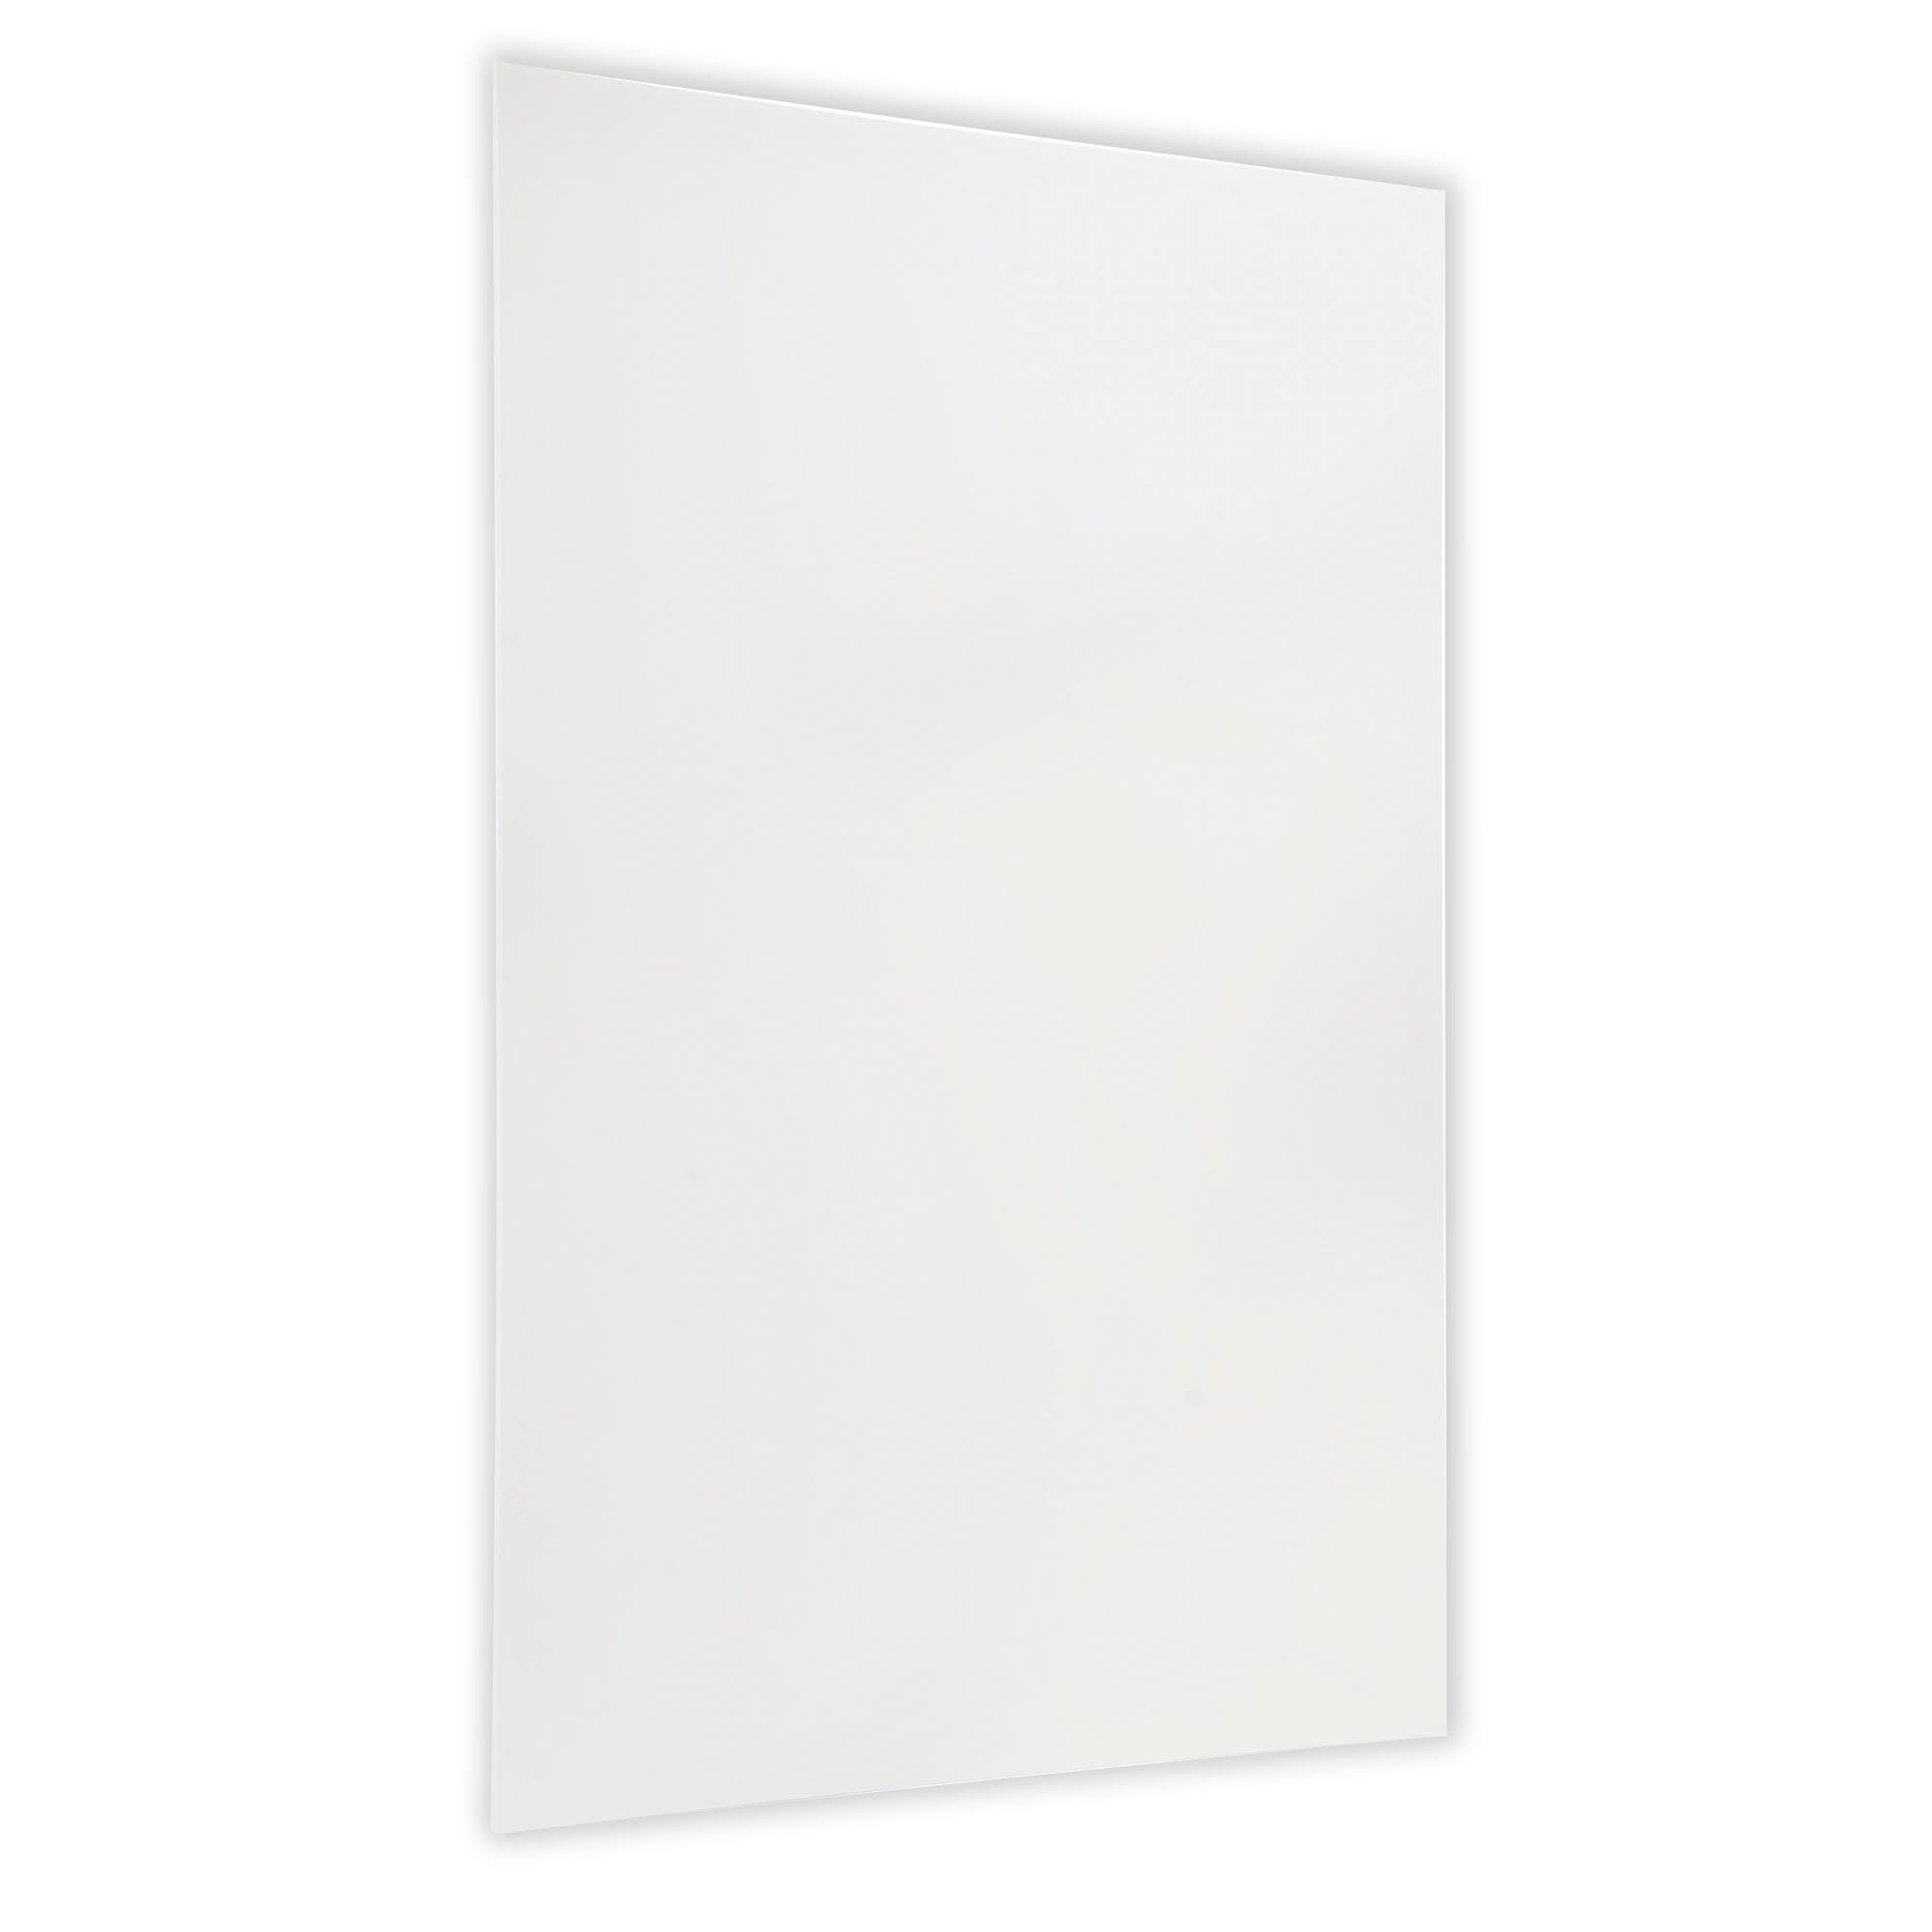 Flipside Products 20300 Foam Board - 20" x 30", White